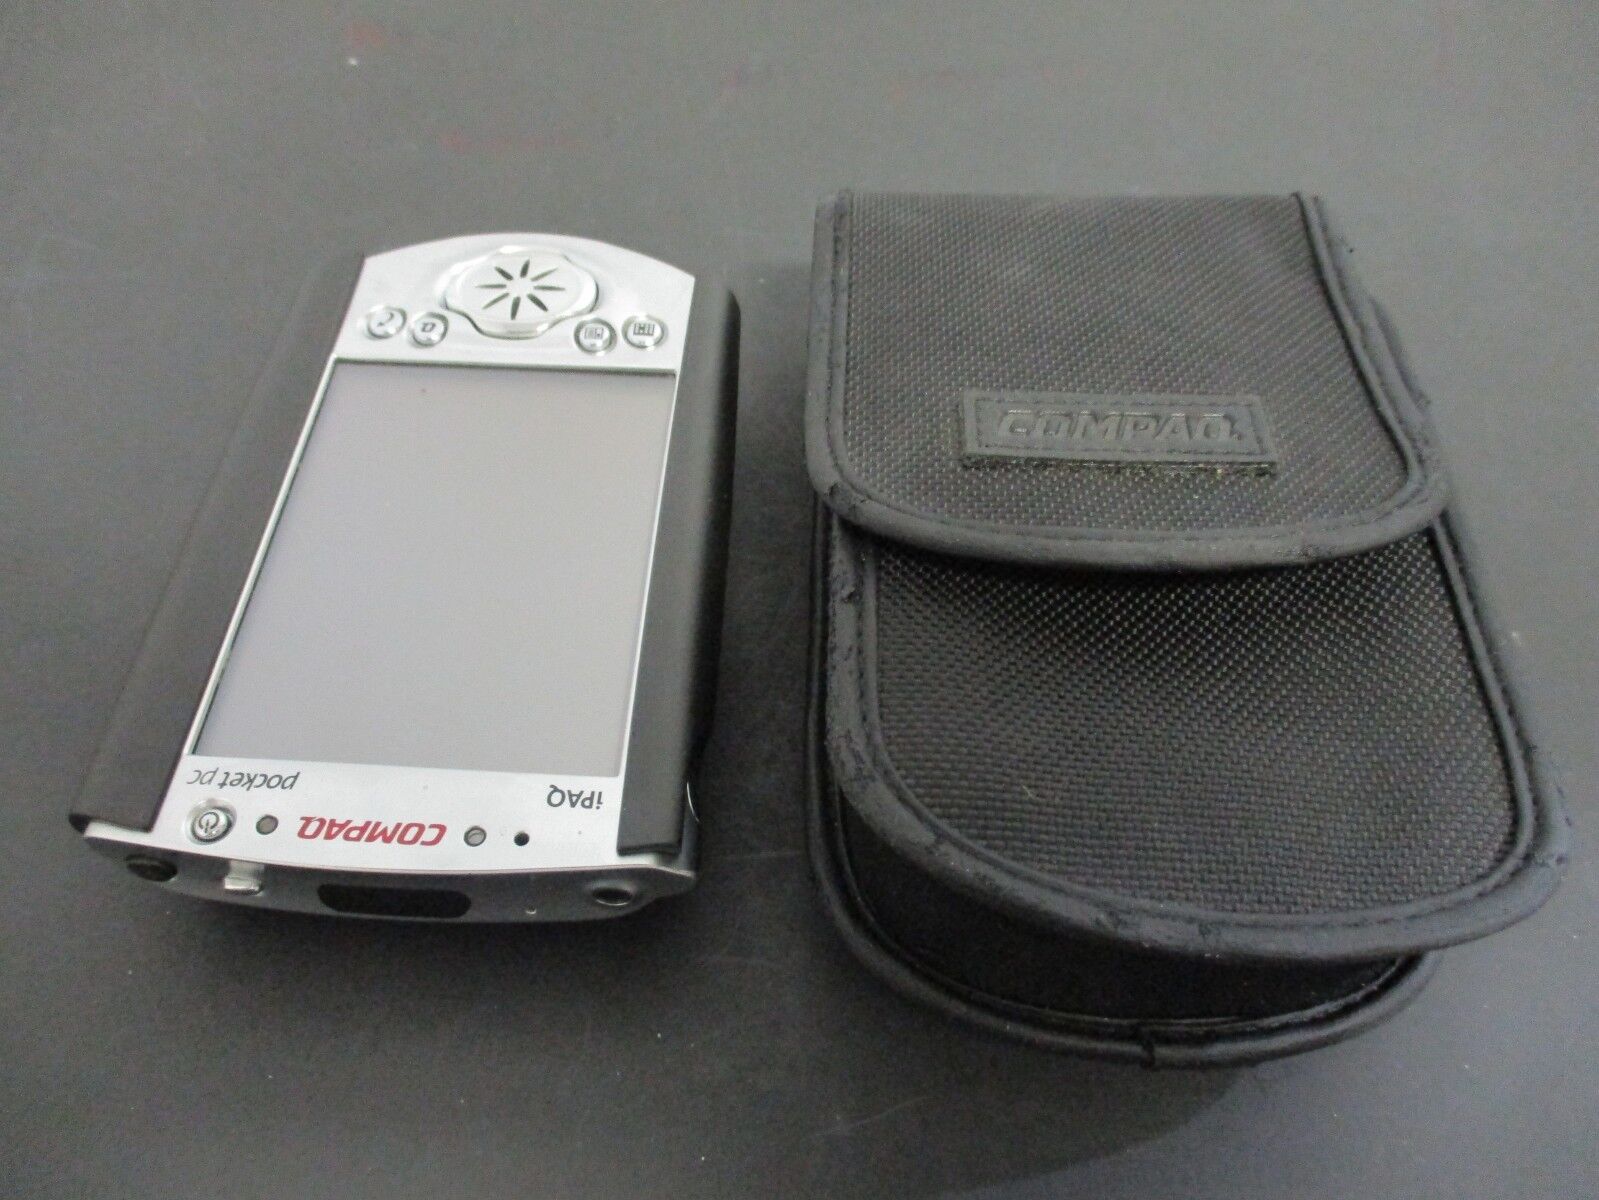 Compaq Ipaq Pocket Pc Color Handheld Pda No Flash Card